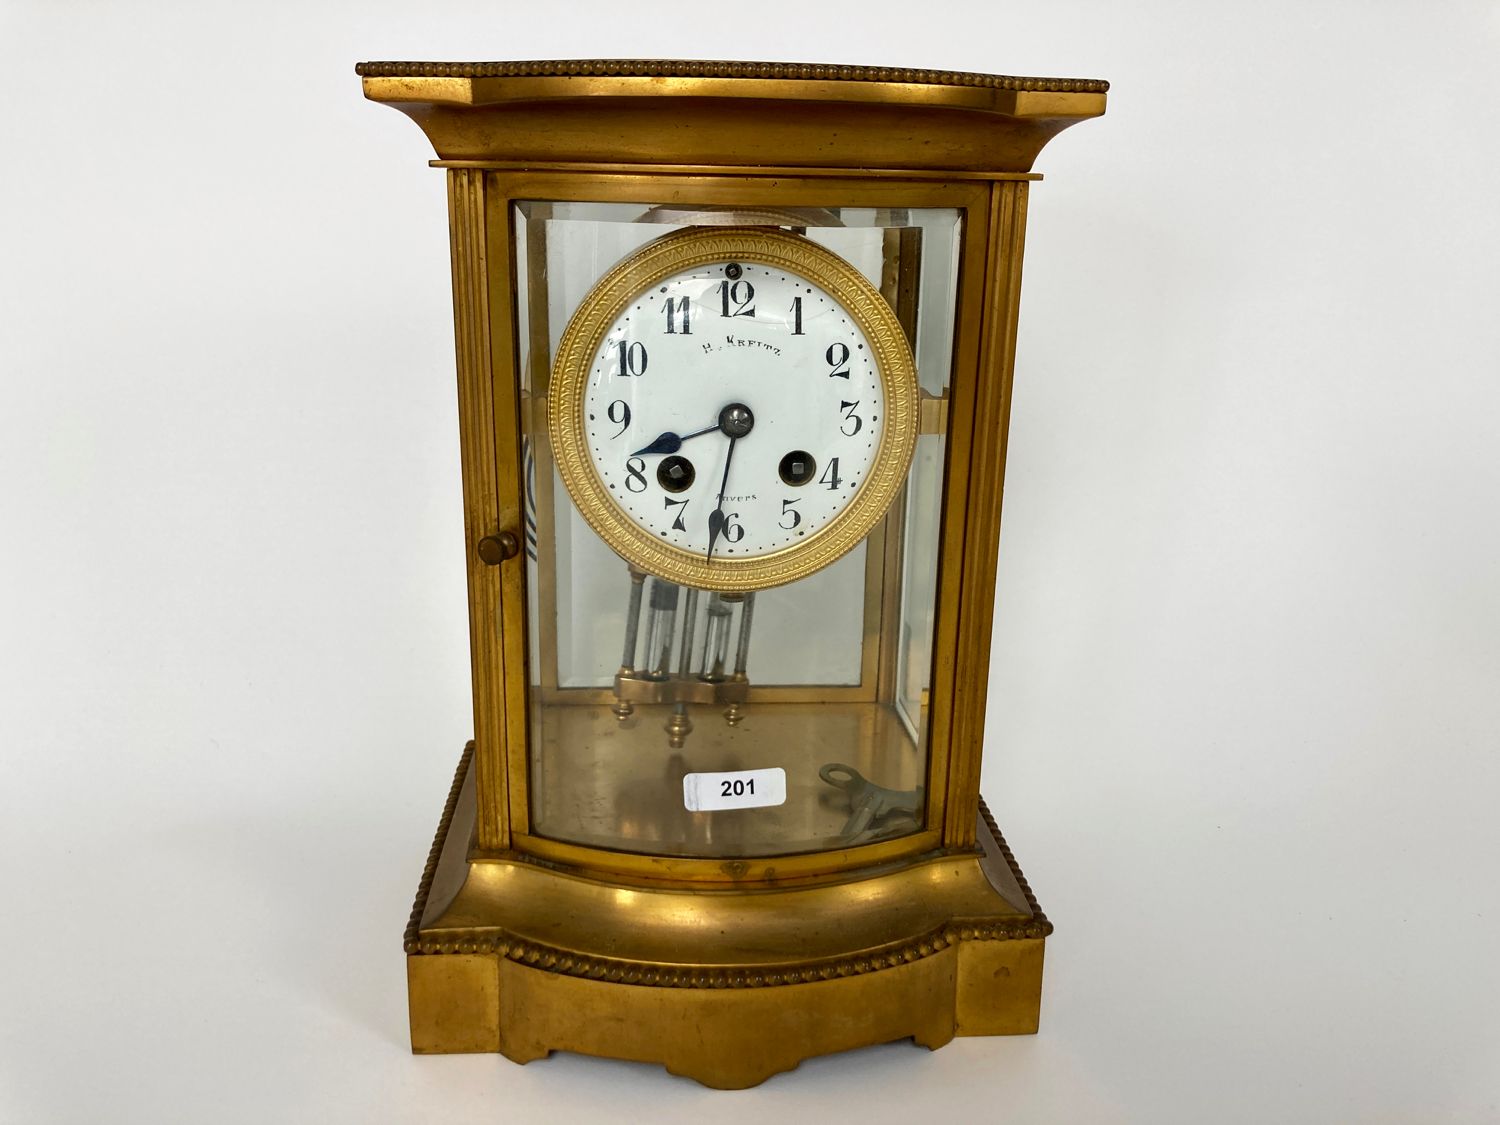 KREITZ - ANVERS 笼式时钟，弯曲的正面，19世纪末至20世纪初，黄铜和斜面玻璃，水银平衡，表盘上有标记，高。24厘米[磨损，原样]。